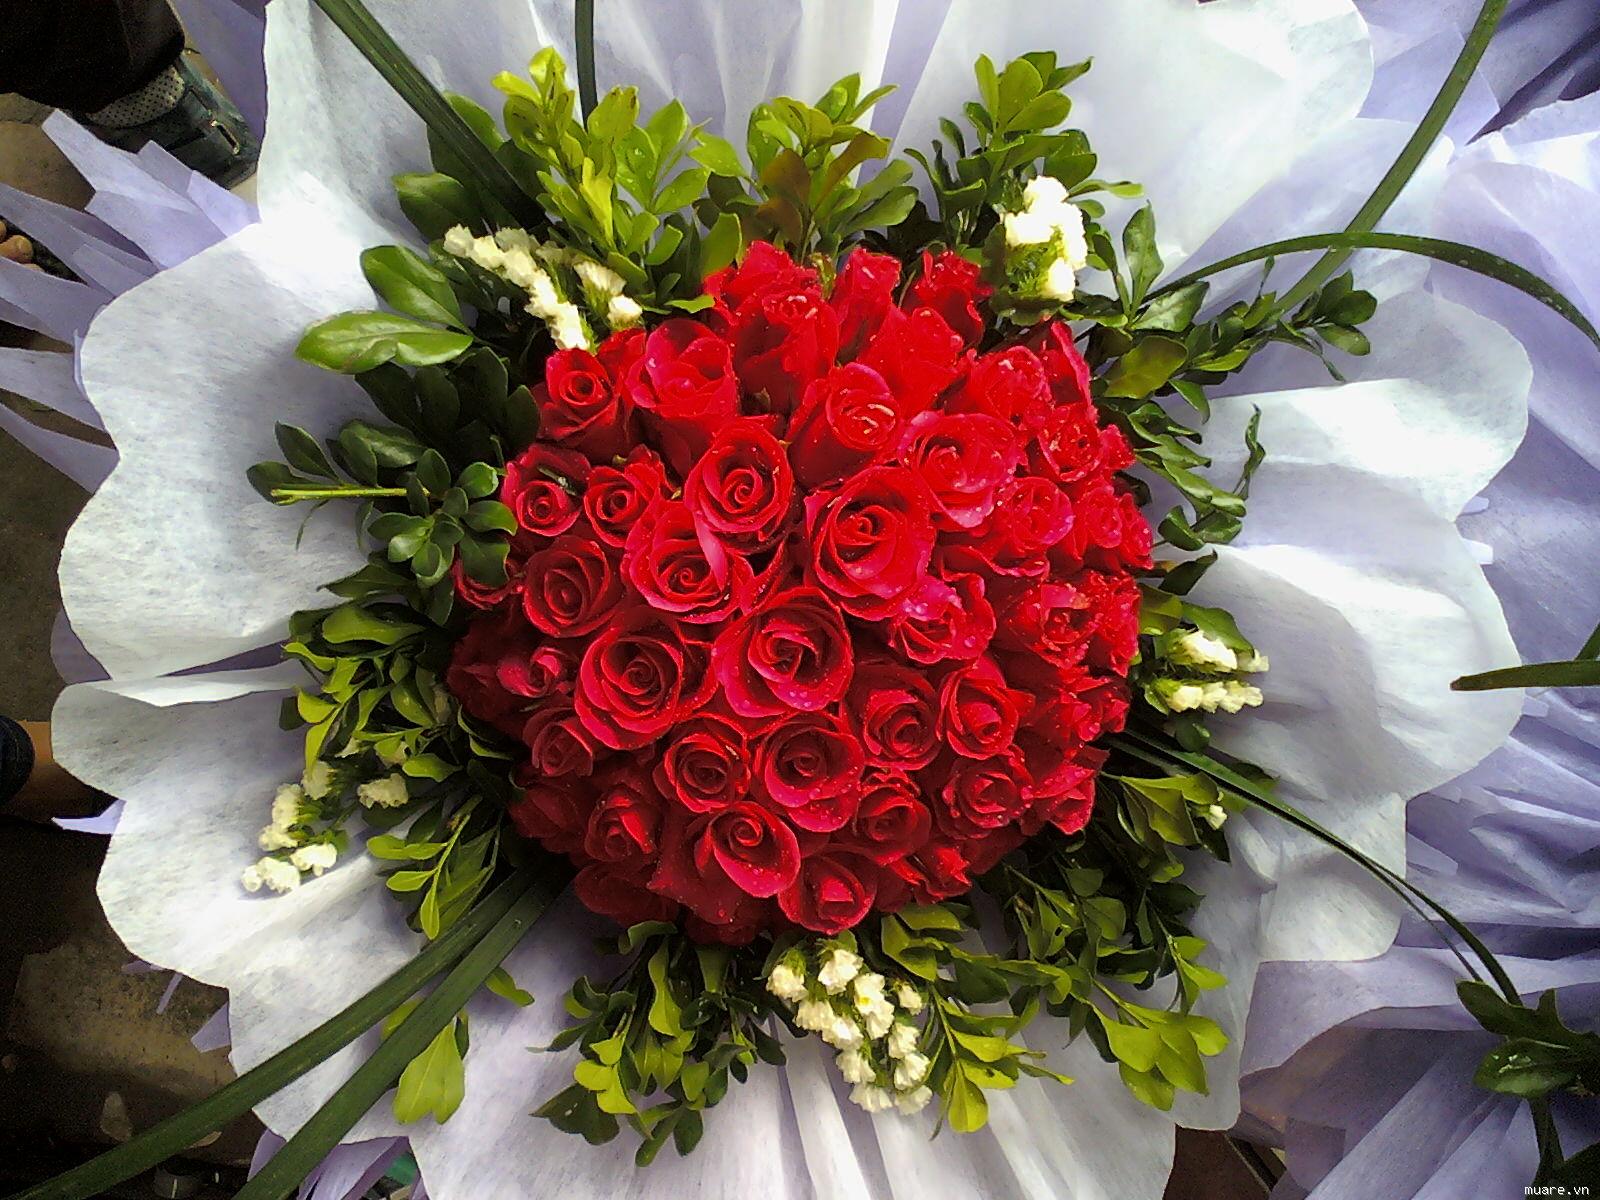 Cắm Hoa Lãng Mạn: Hoa luôn là một món quà thật đặc biệt và sang trọng mà ai cũng mong muốn được tặng. Hãy cùng nhau khám phá những cách cắm hoa lãng mạn và tinh tế nhất trong hình ảnh dưới đây nhé!